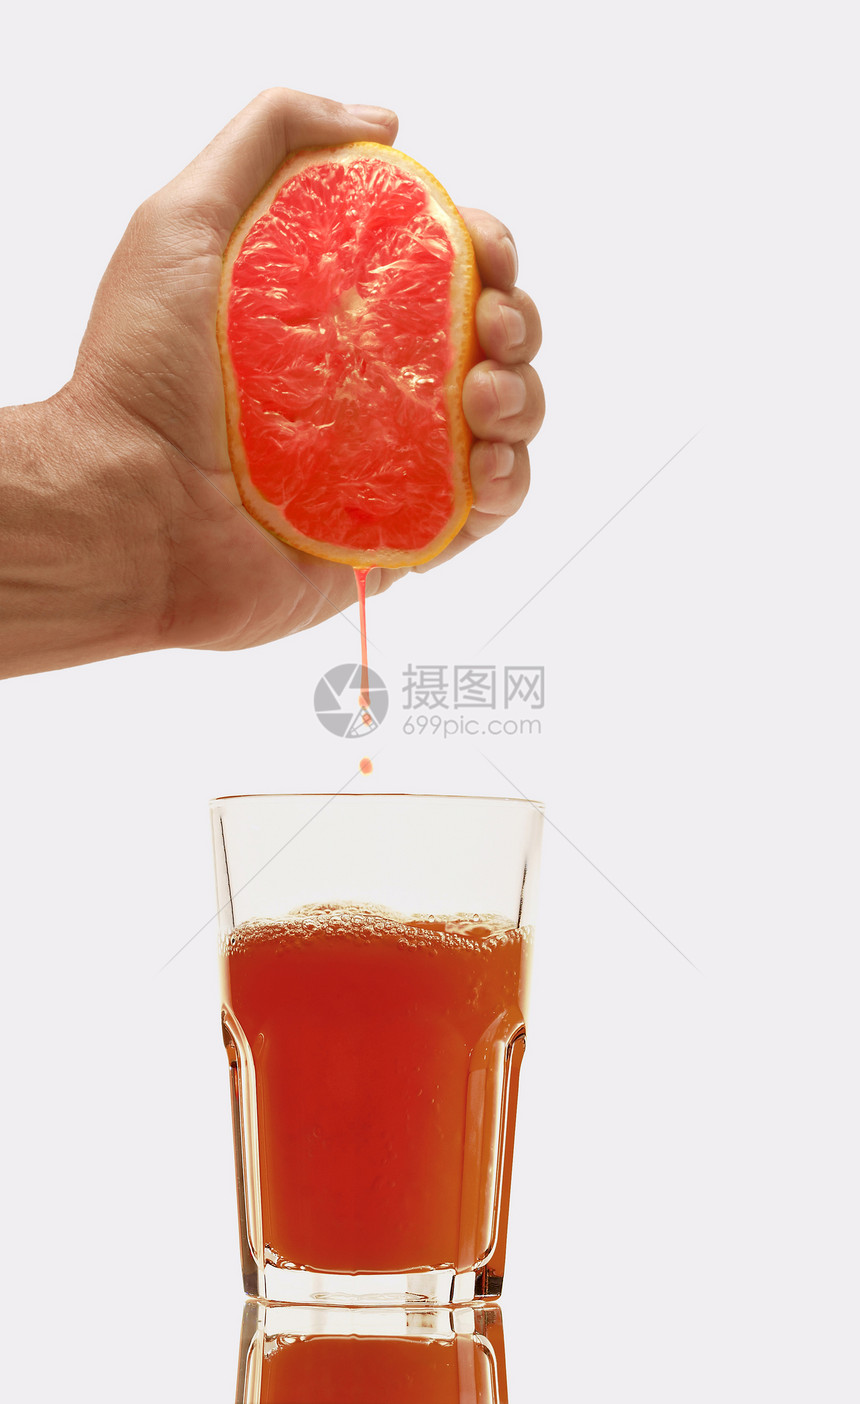 将橙汁从橙汁中倒入玻璃杯图片